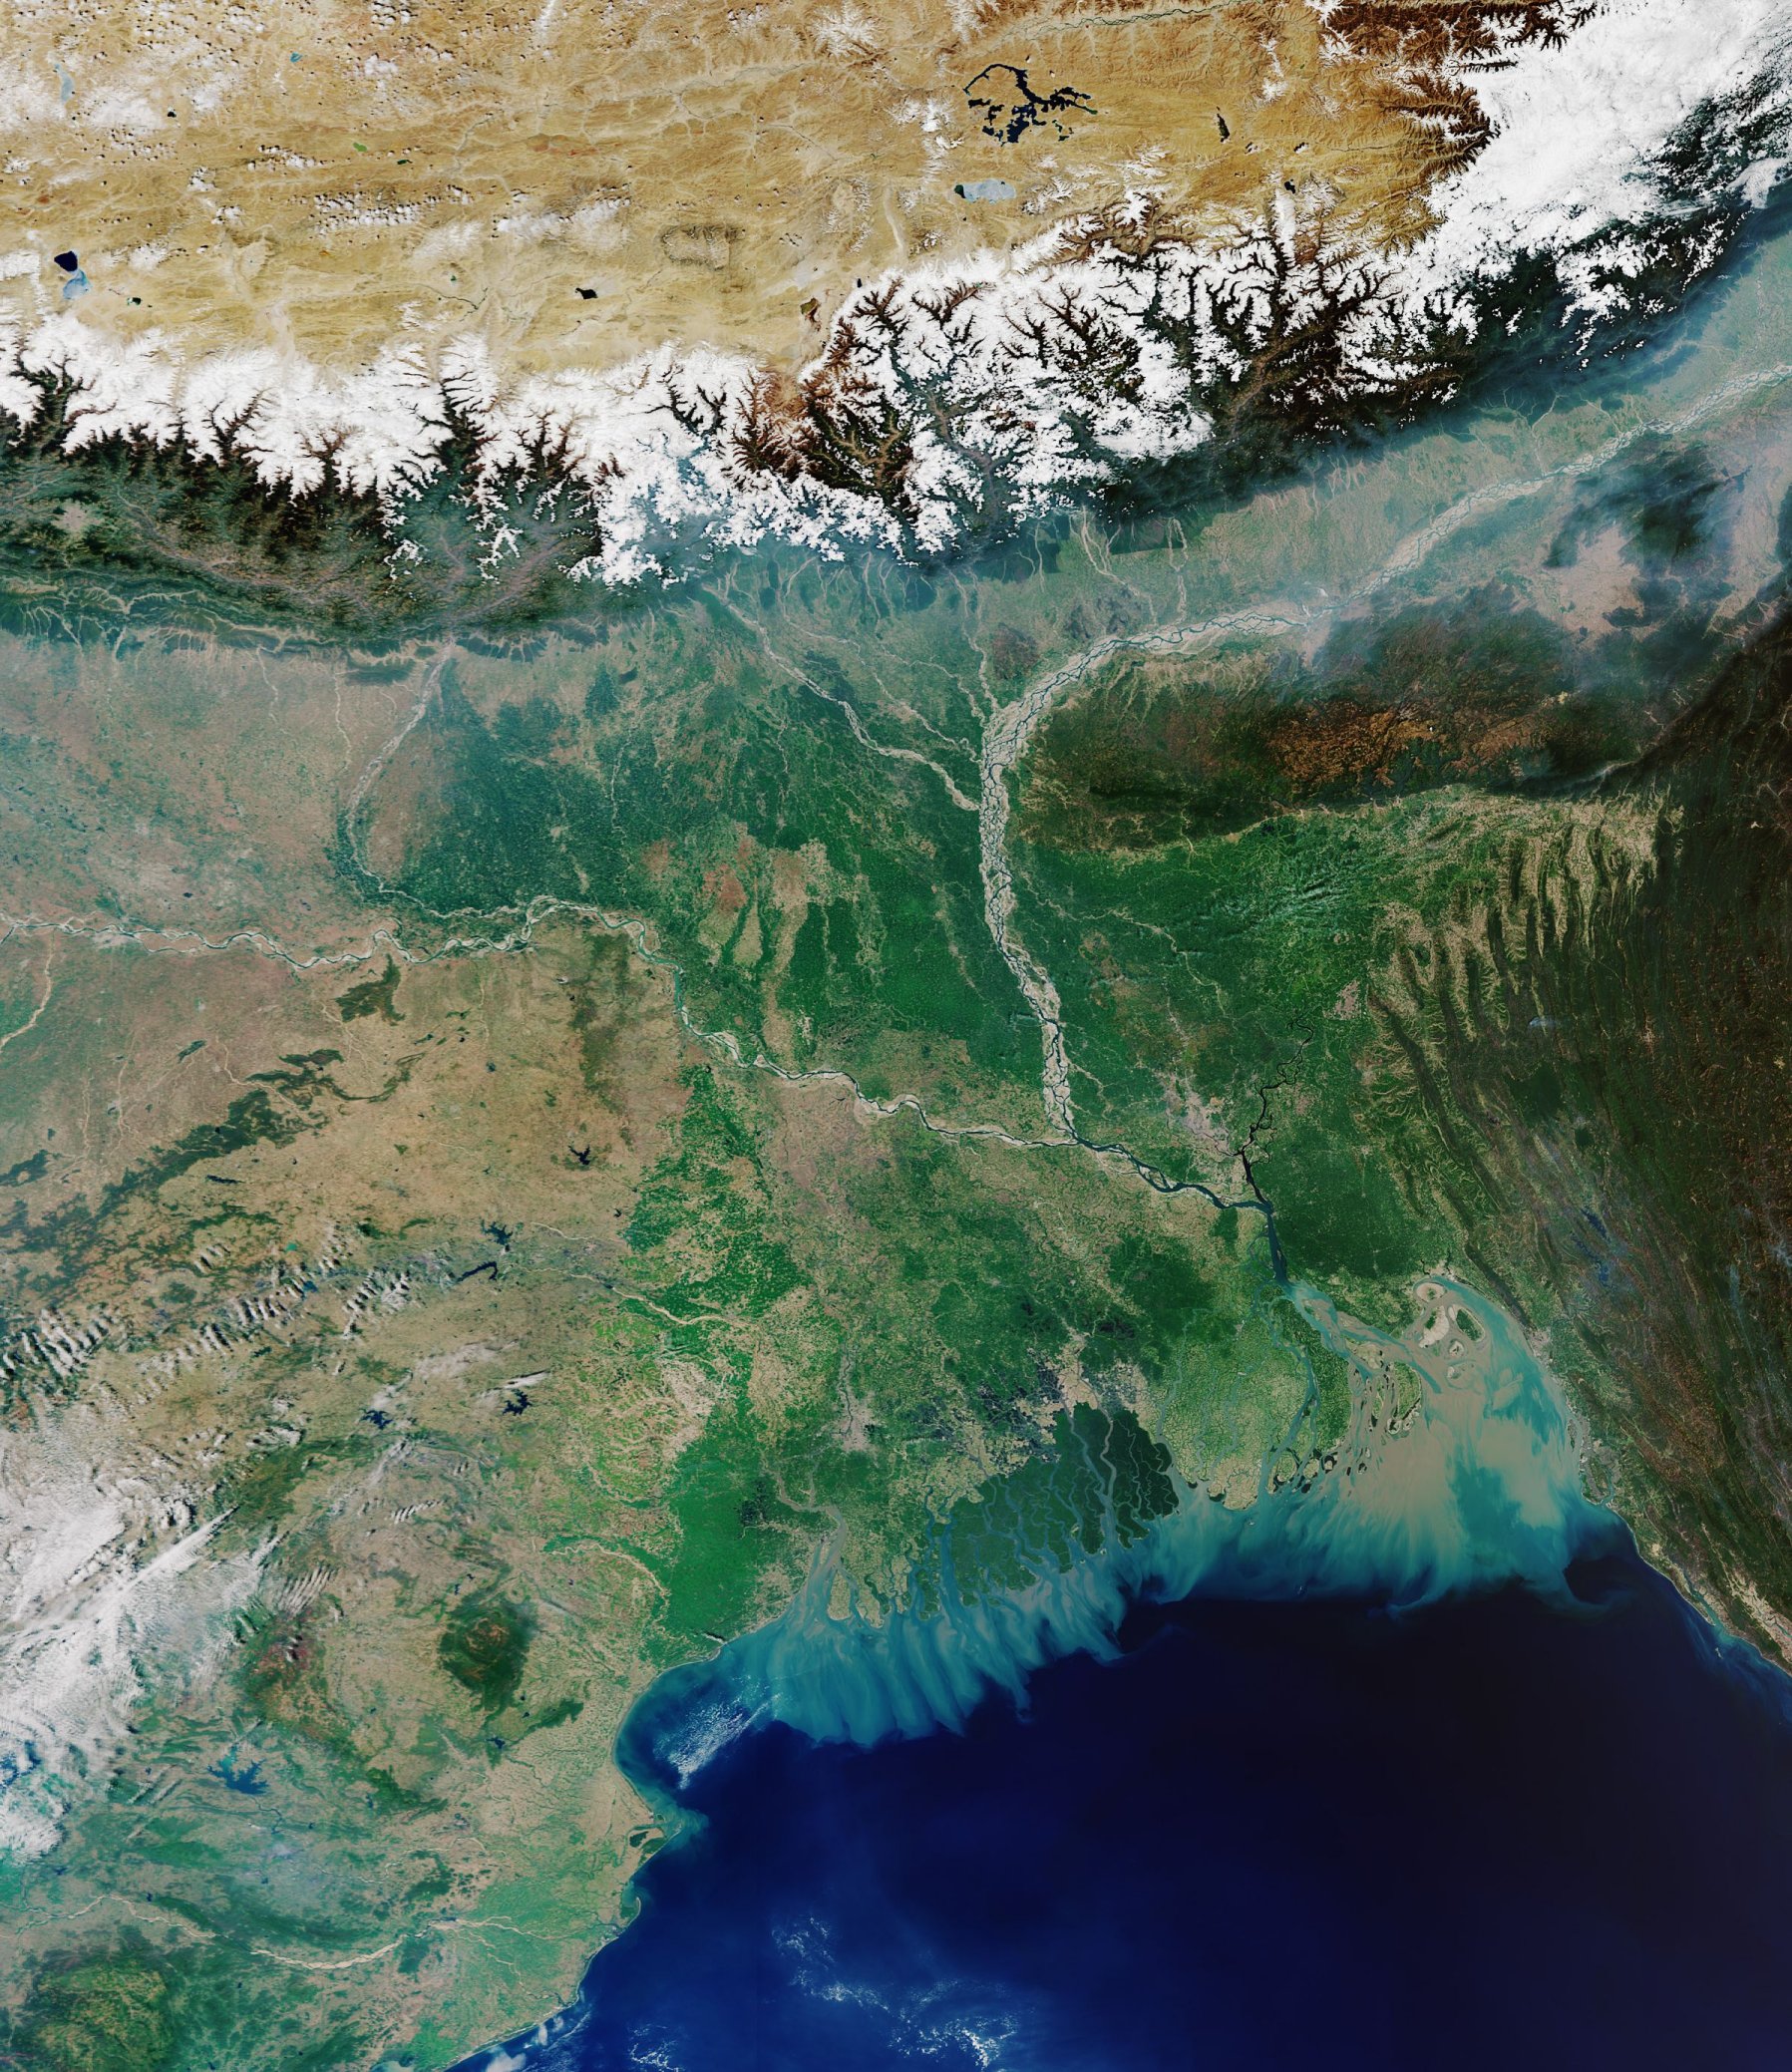 Il delta del fiume Gange (India / Bangladesh)